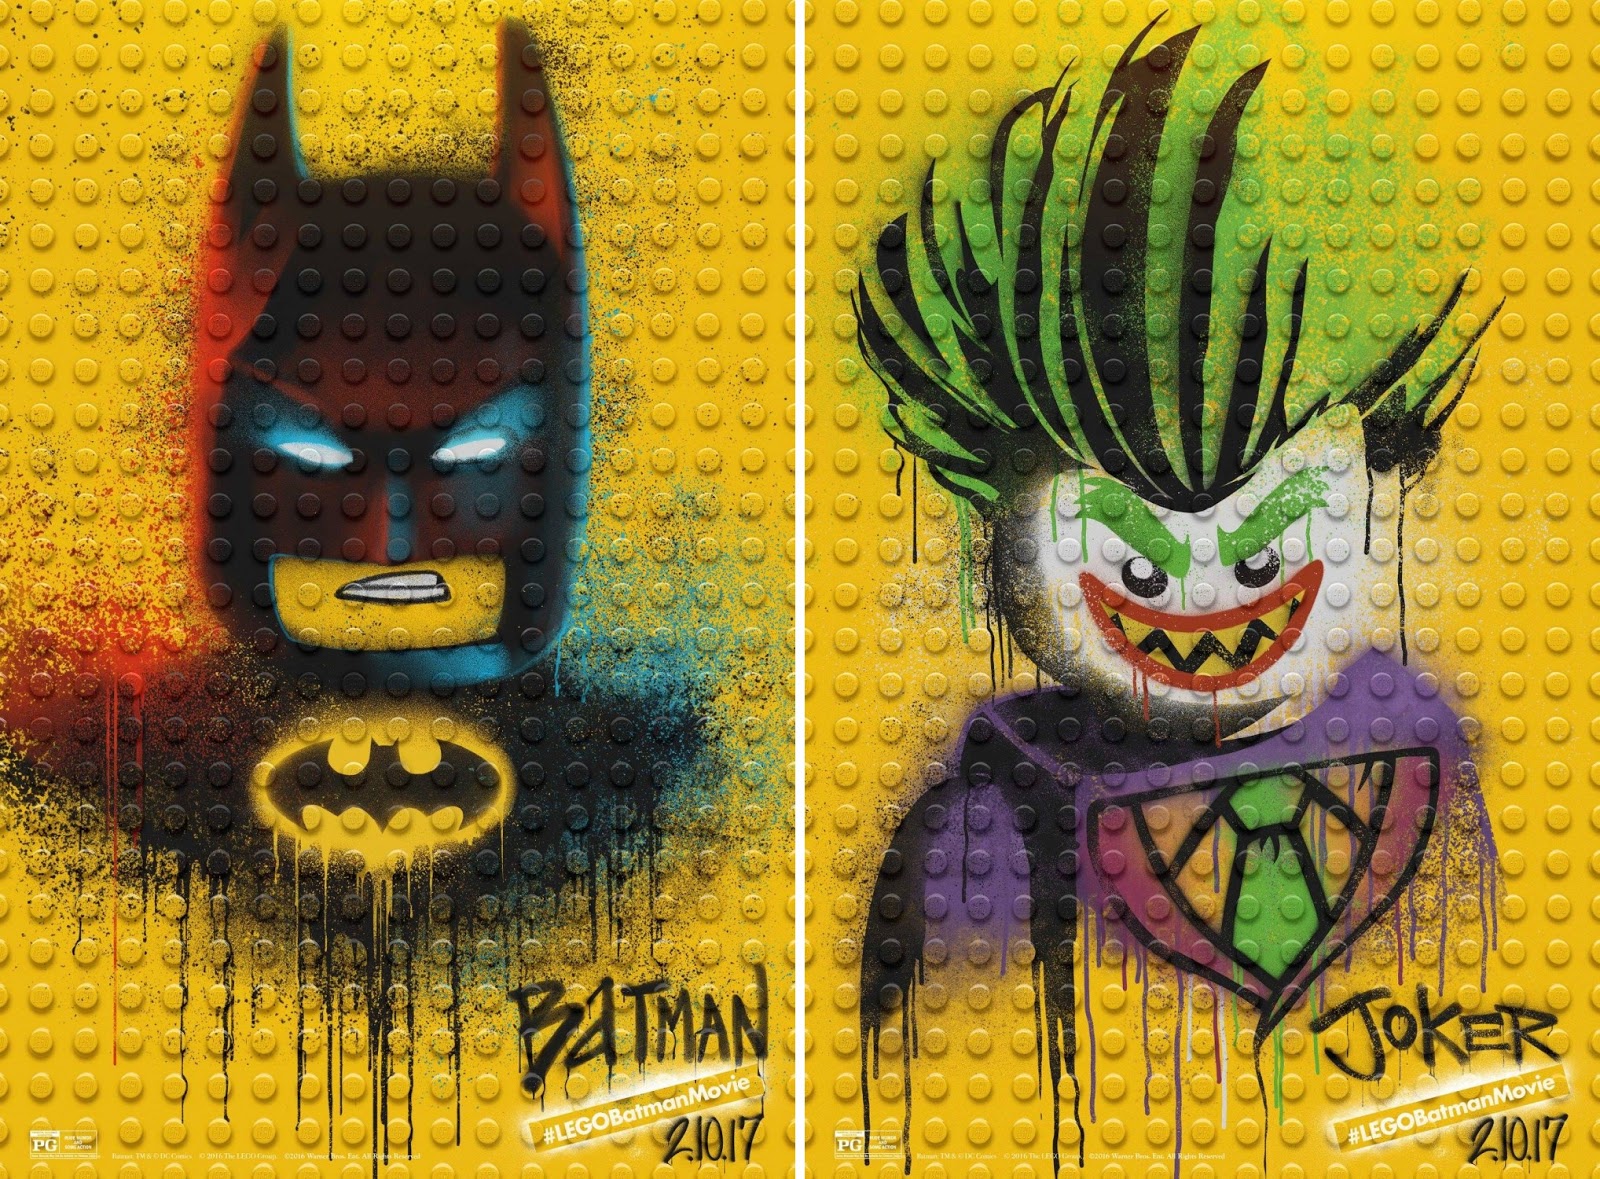 Graffiti Joker Cesar Romero Batman 66 4 x 6 Art Print Neon Clown